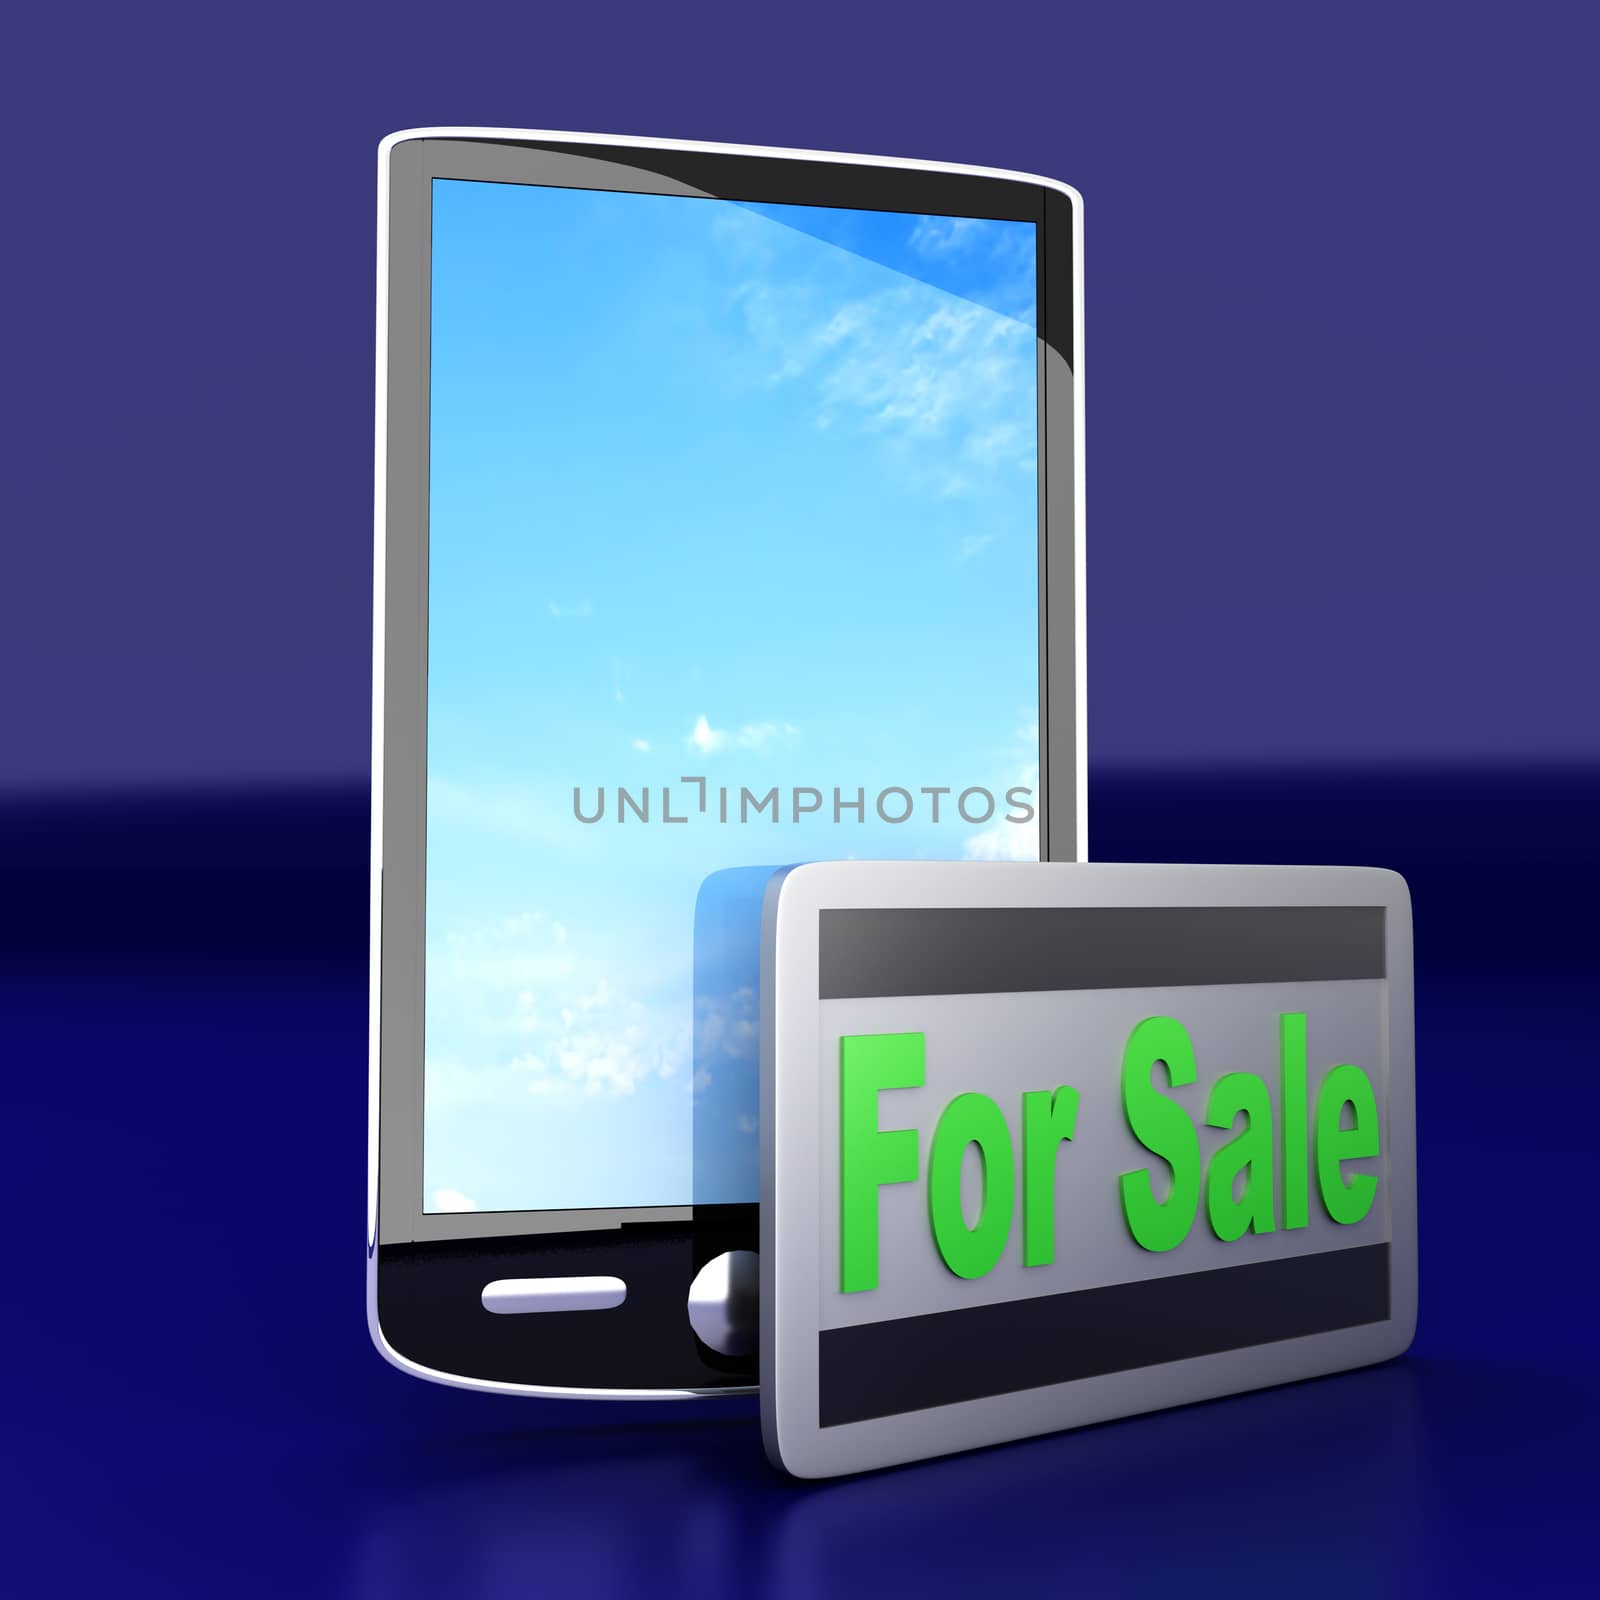 A Smartphone for sale. 3D rendered illustration.